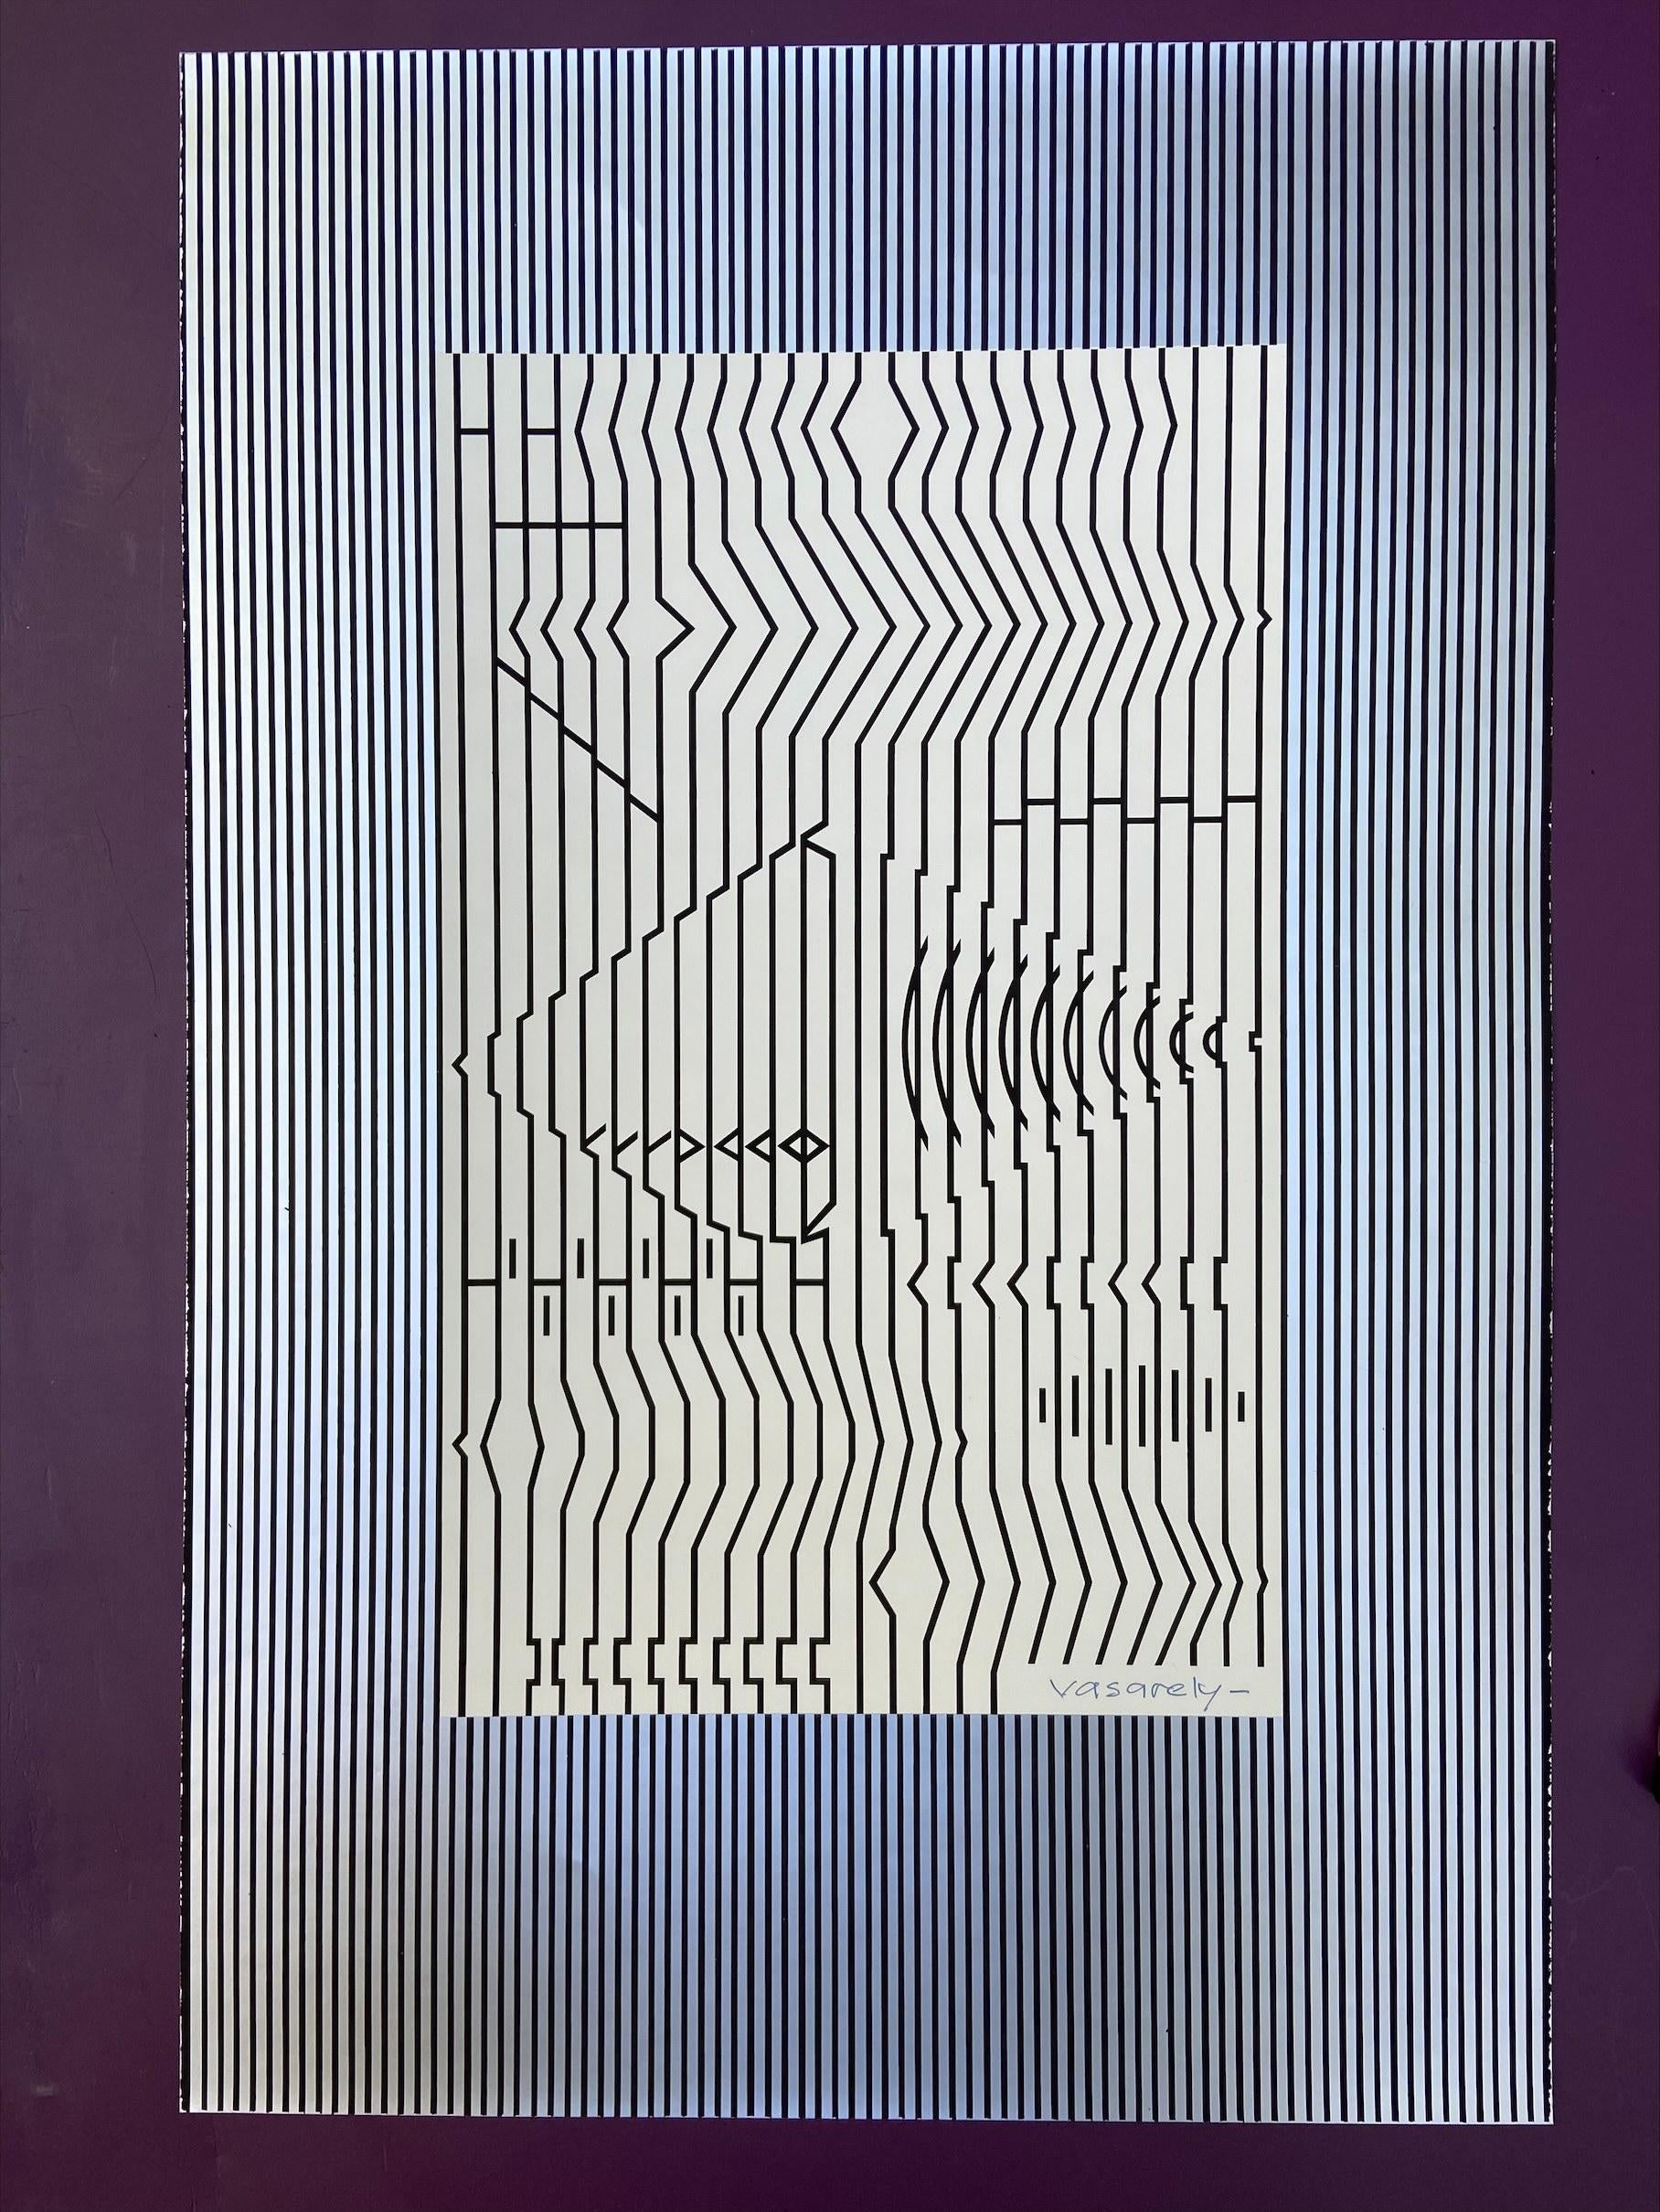 Victor VASARELY (1908-1997) - Zither
Serigrafie auf Karton mit silbernem Hintergrund in Relief 
signiert unten rechts 
Höhe: 60 cm - Breite: 40 cm
1973
900€